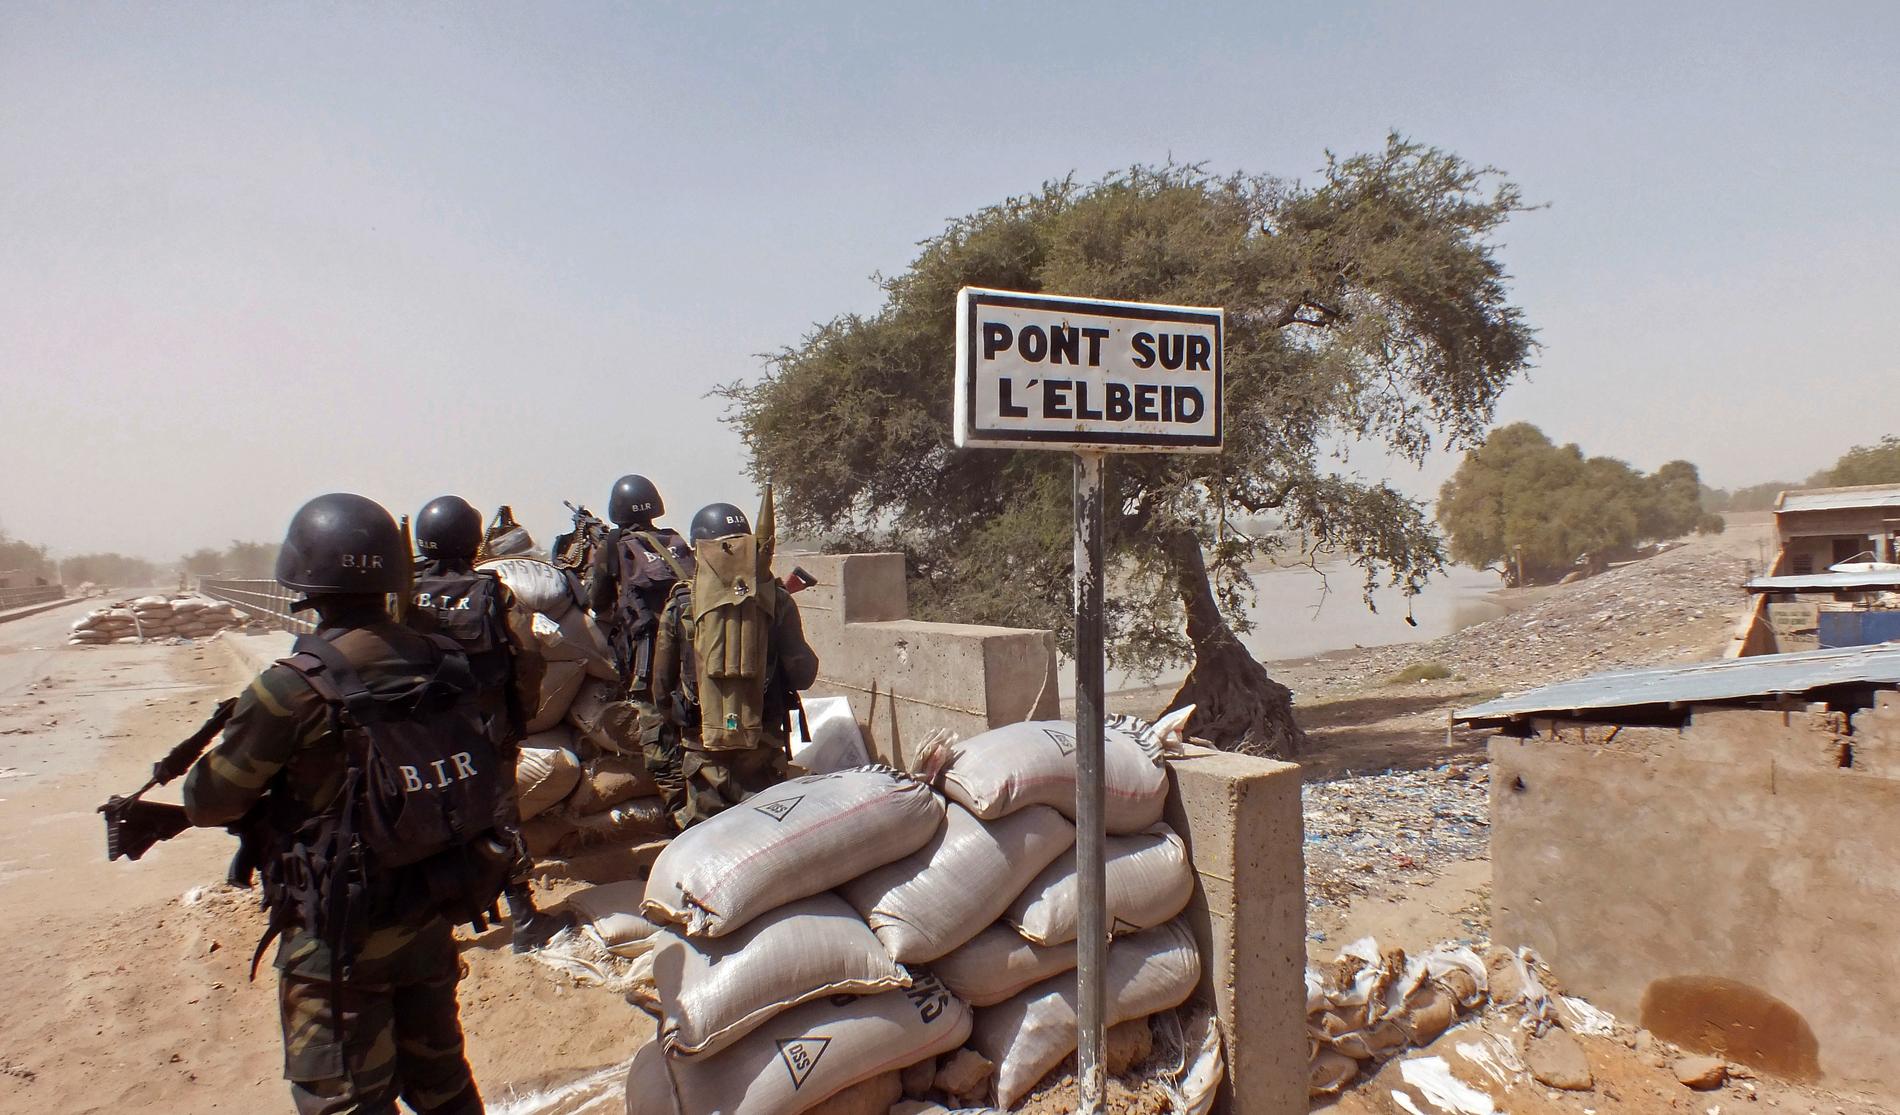 Kamerunska soldater vid vägspärr letar efter anhängare till terrorgruppen Boko Haram. Arkivbild.